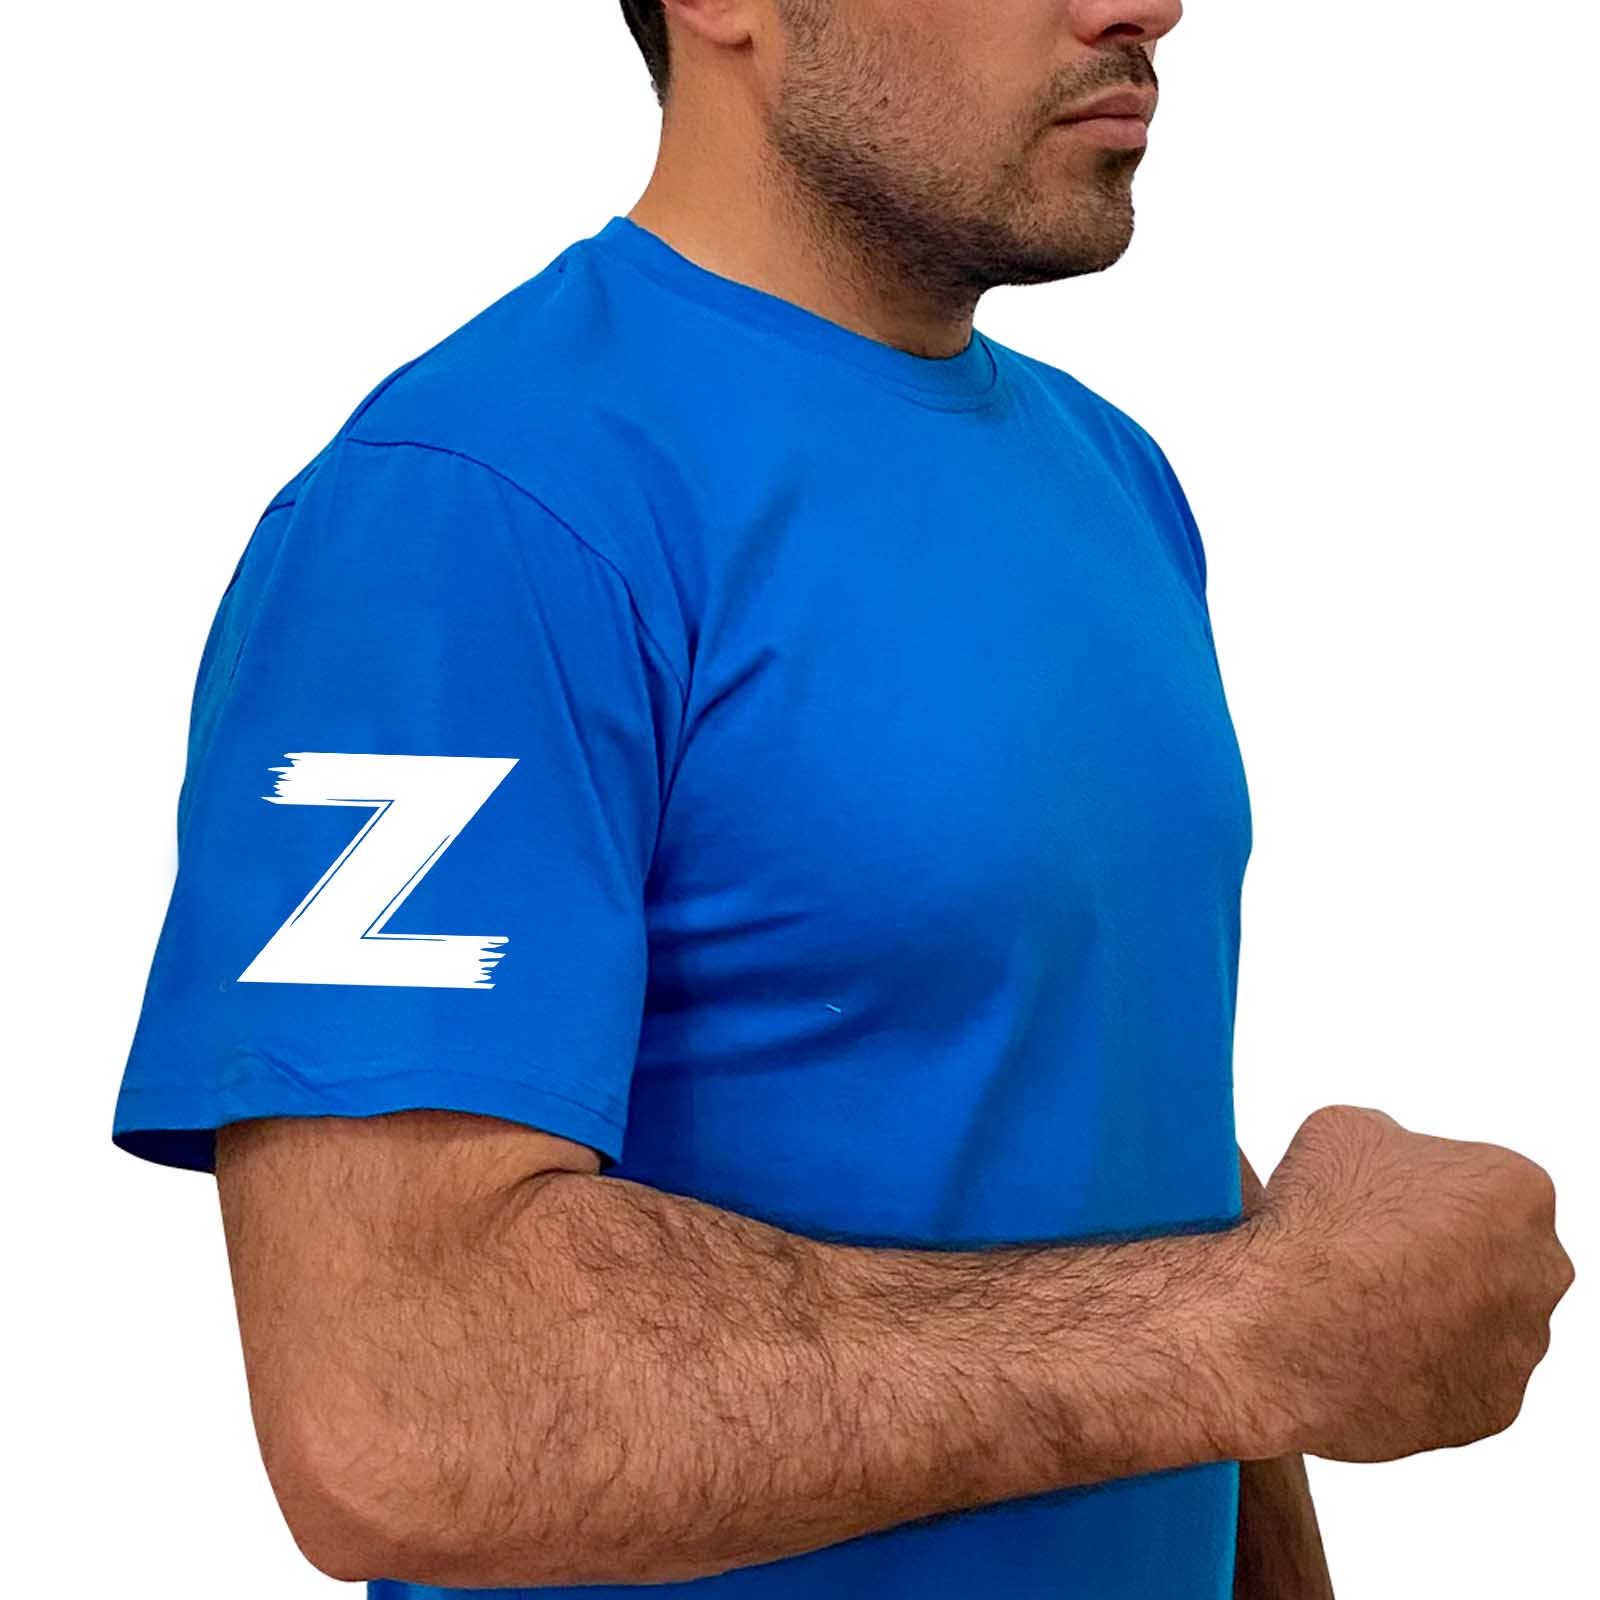 Купить хлопковую голубую футболку с литерой Z с доставкой